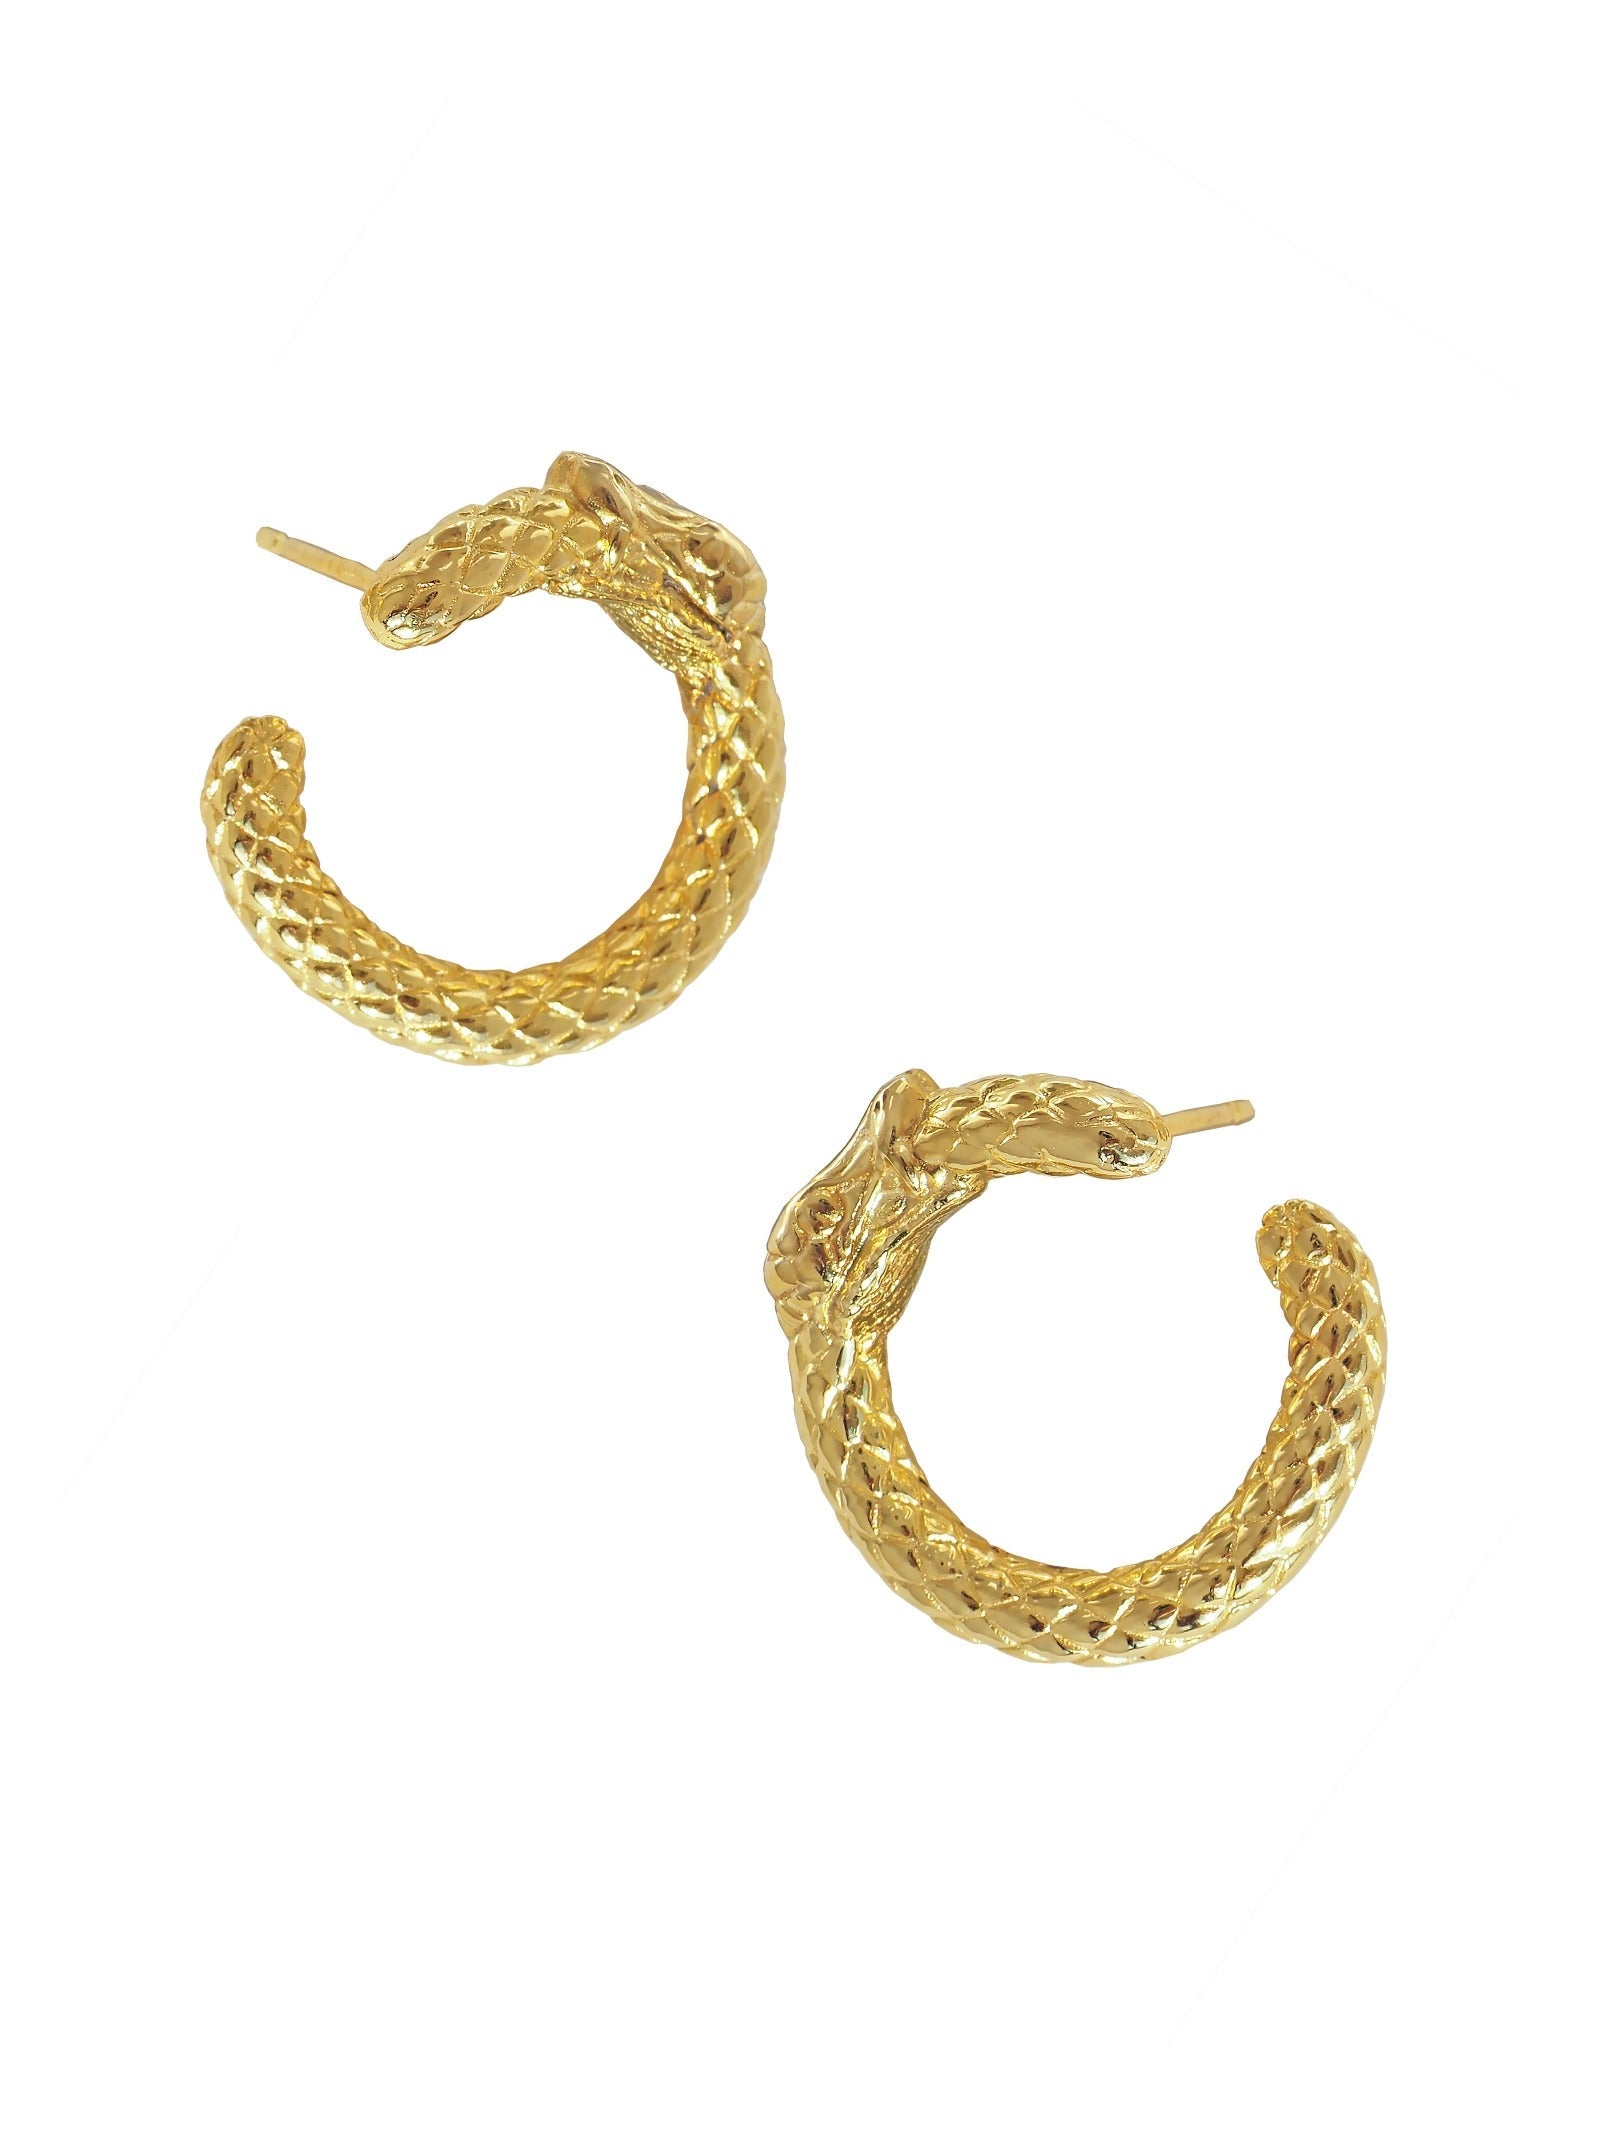 Ouroboros Hoop Earrings. 23ct Gold Vermeil 